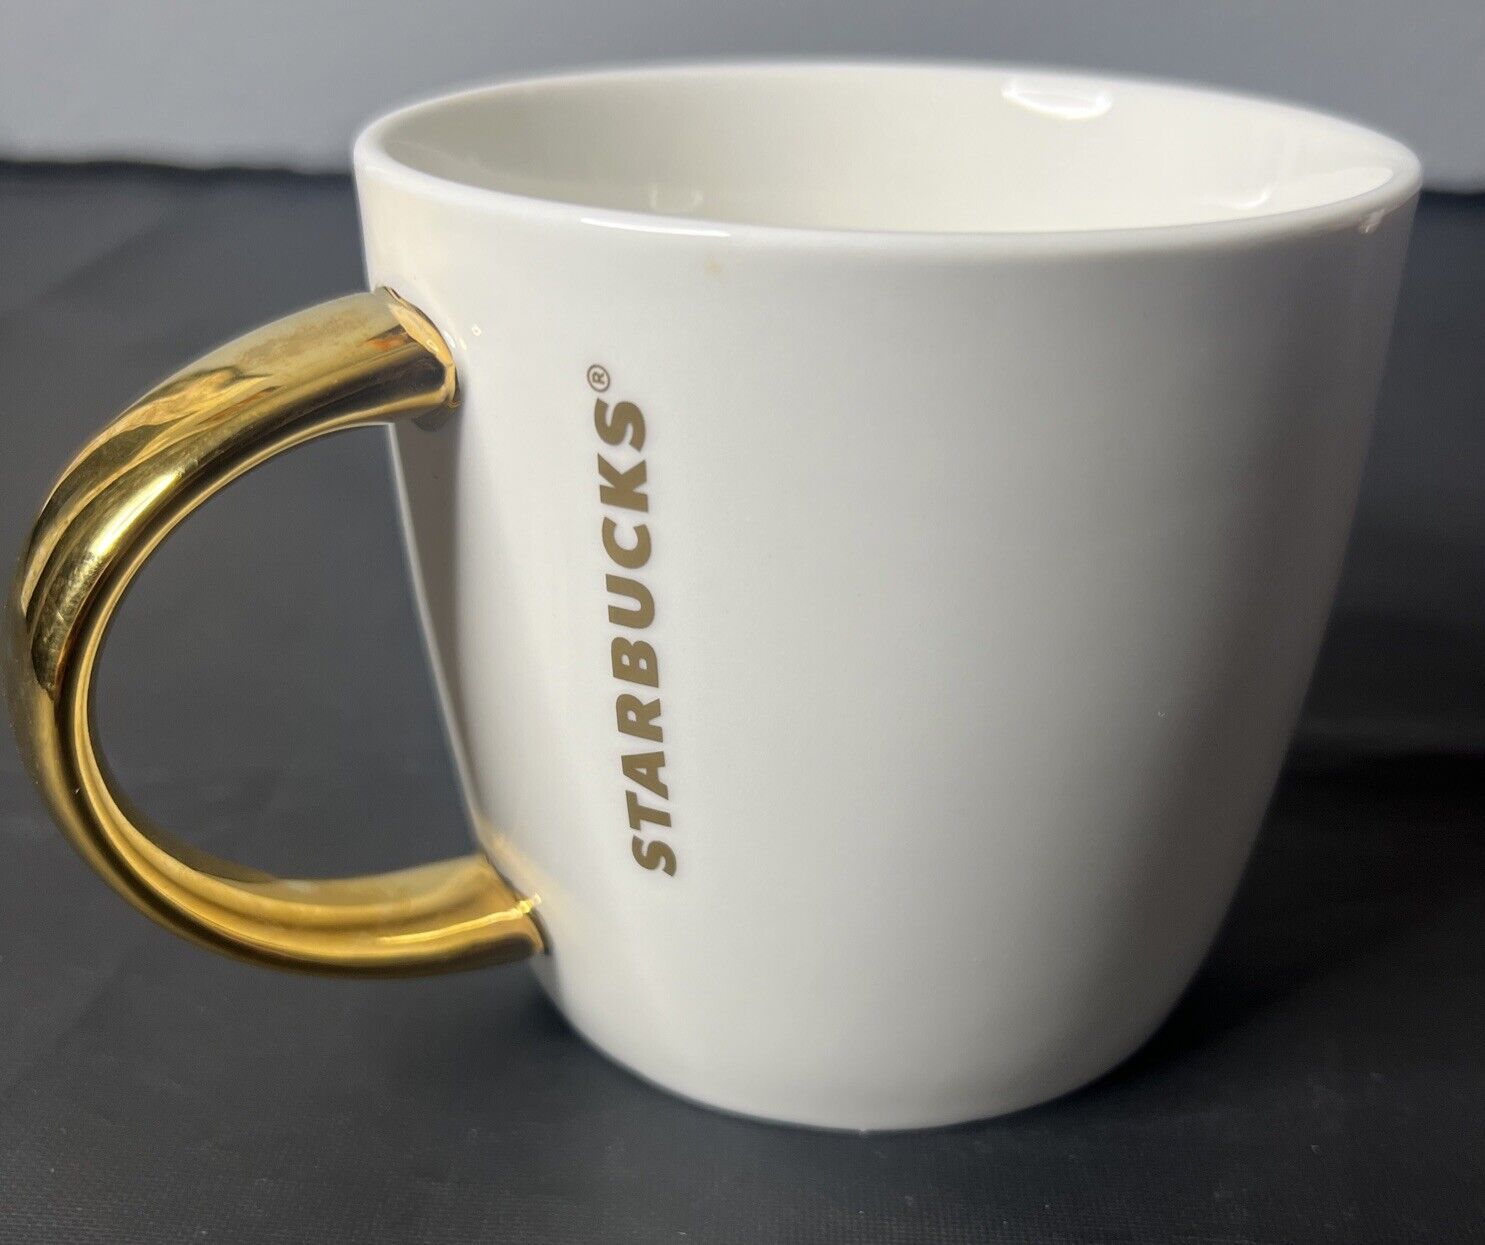 2015 Starbucks White & Gold Ceramic Coffee Mug 14 oz. Gold Starbucks Lettering